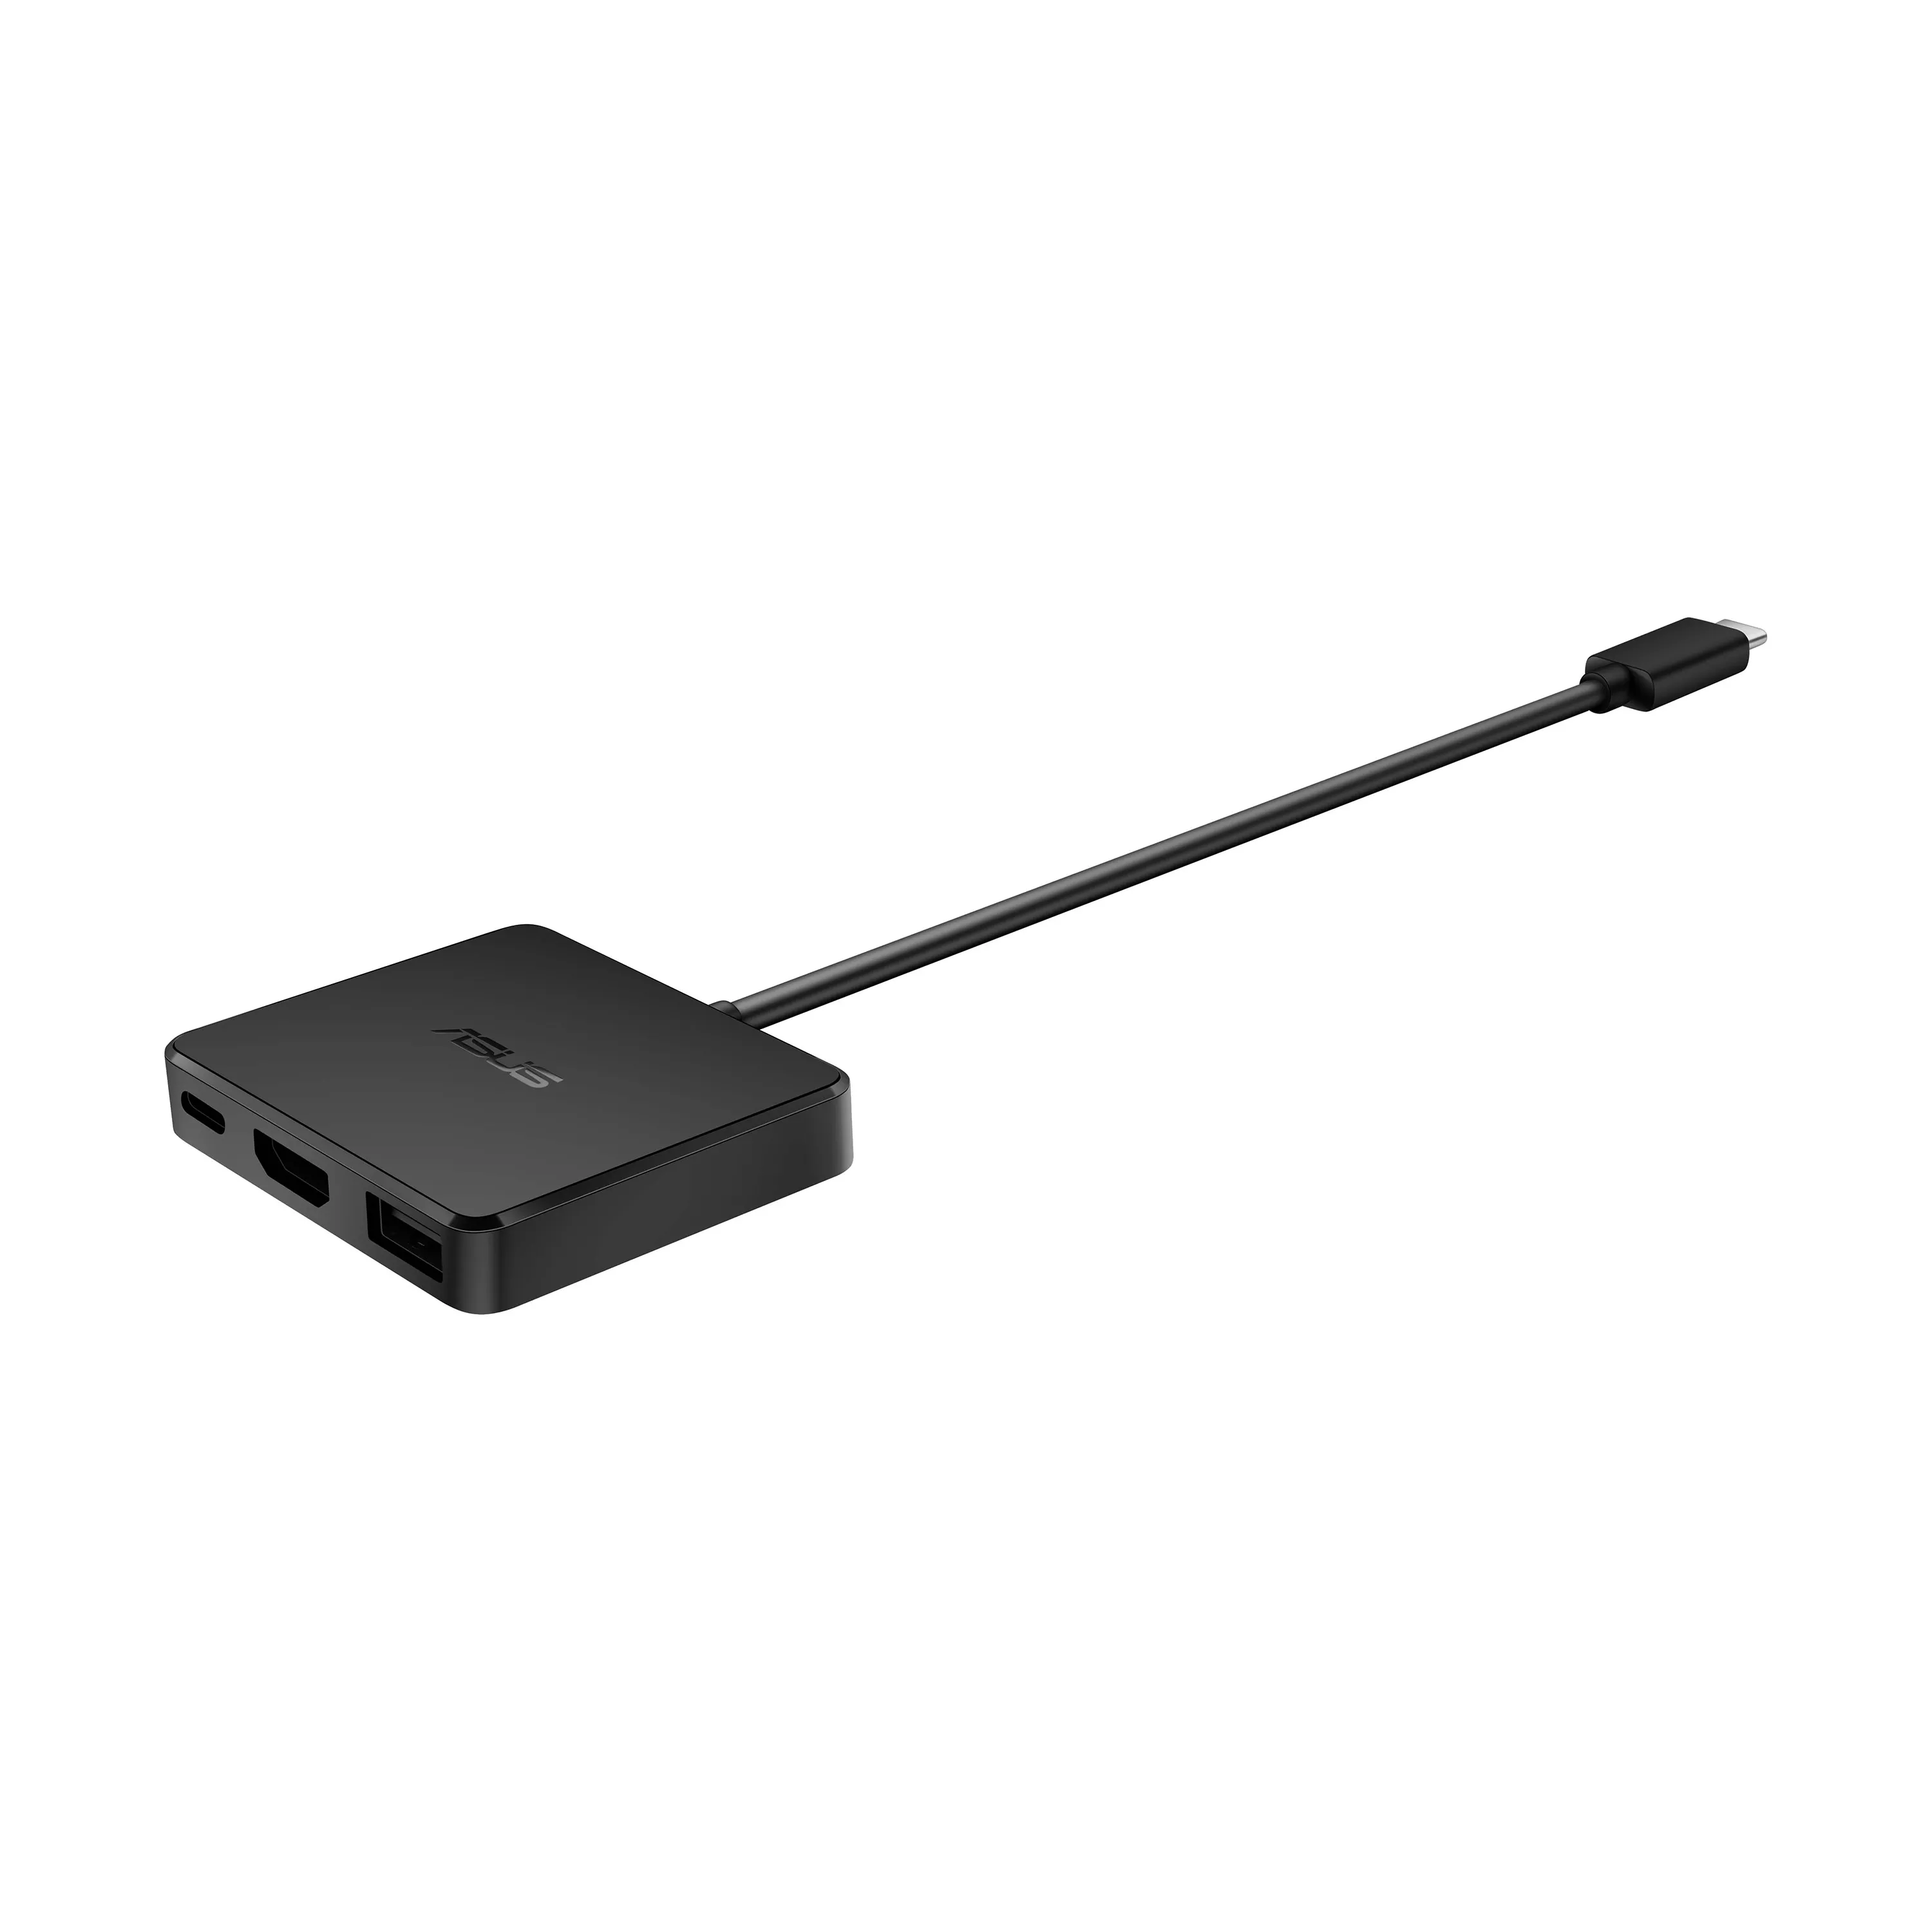 Vente ASUS DC100 USB-C Mini Dock compact and lightweight ASUS au meilleur prix - visuel 6